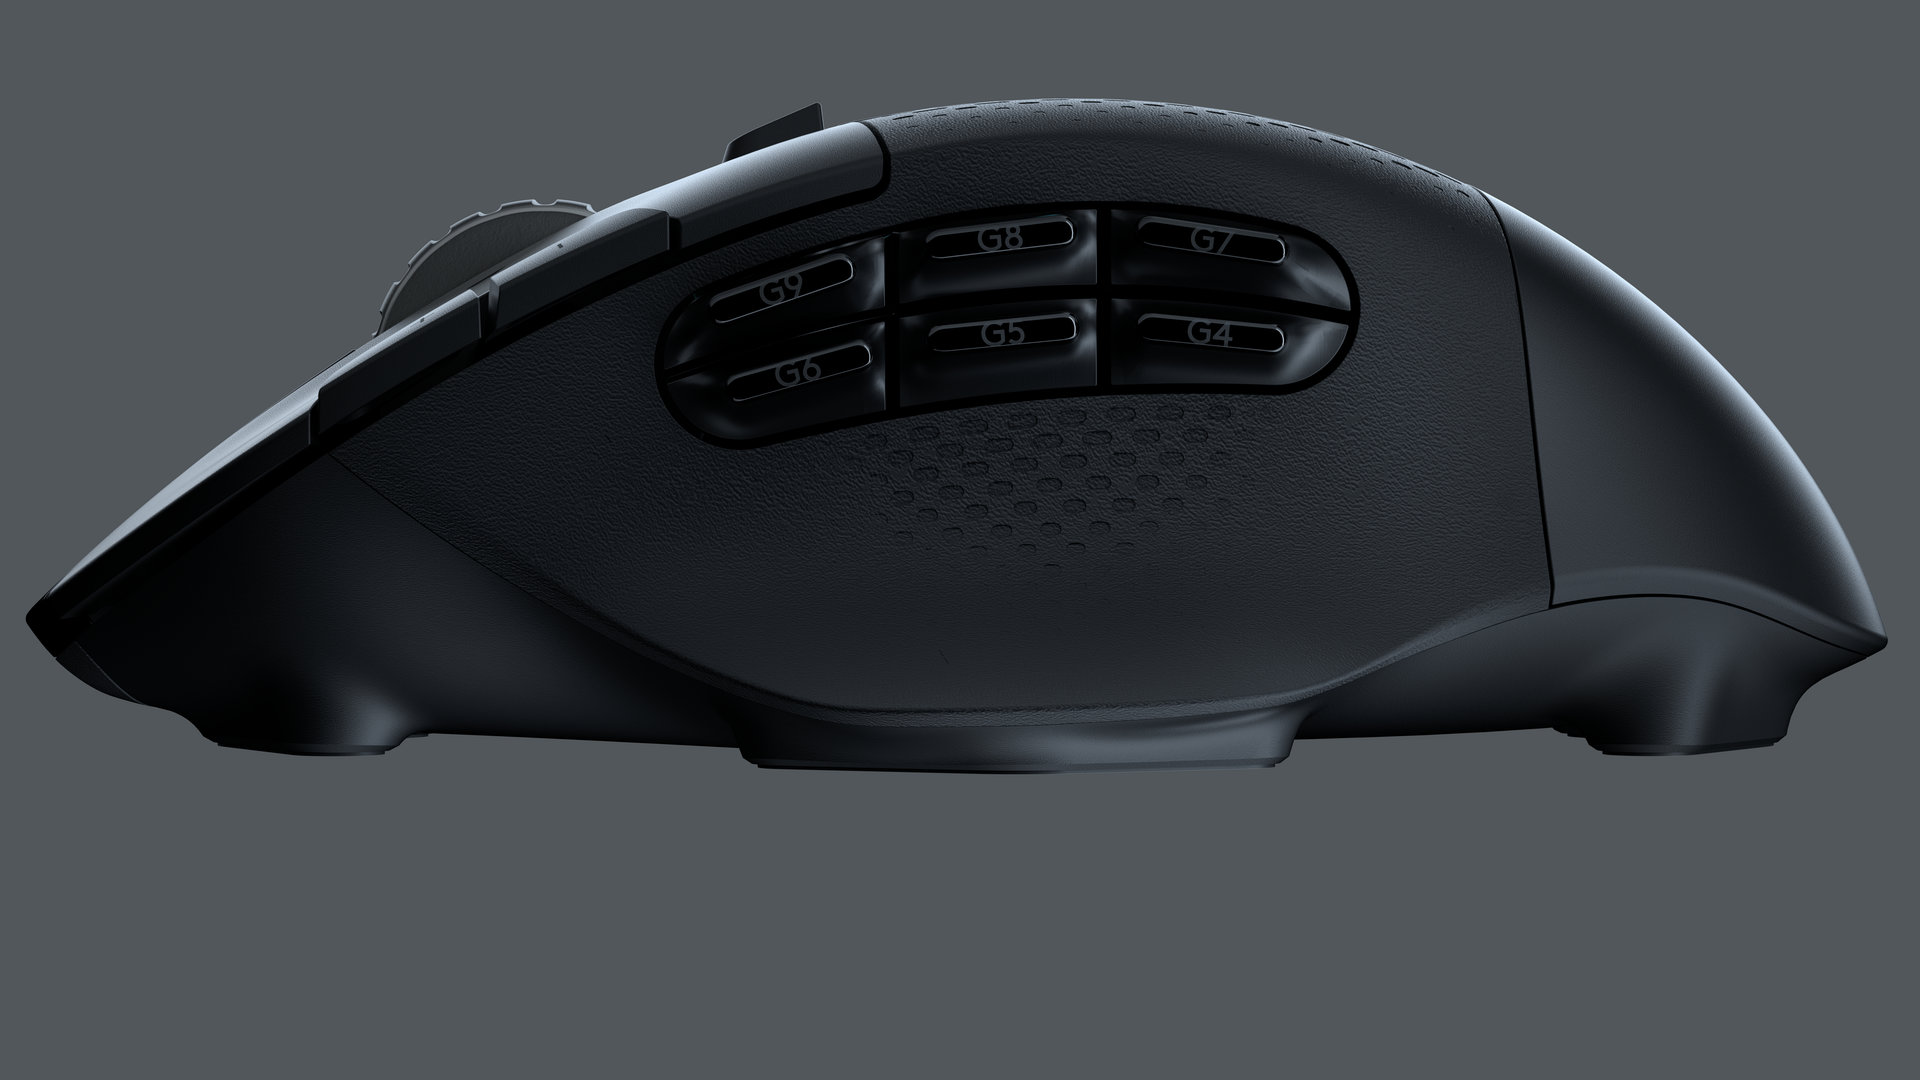 Image 5 : G604 Lightspeed : la nouvelle souris gaming sans fil de Logitech pour les MMO